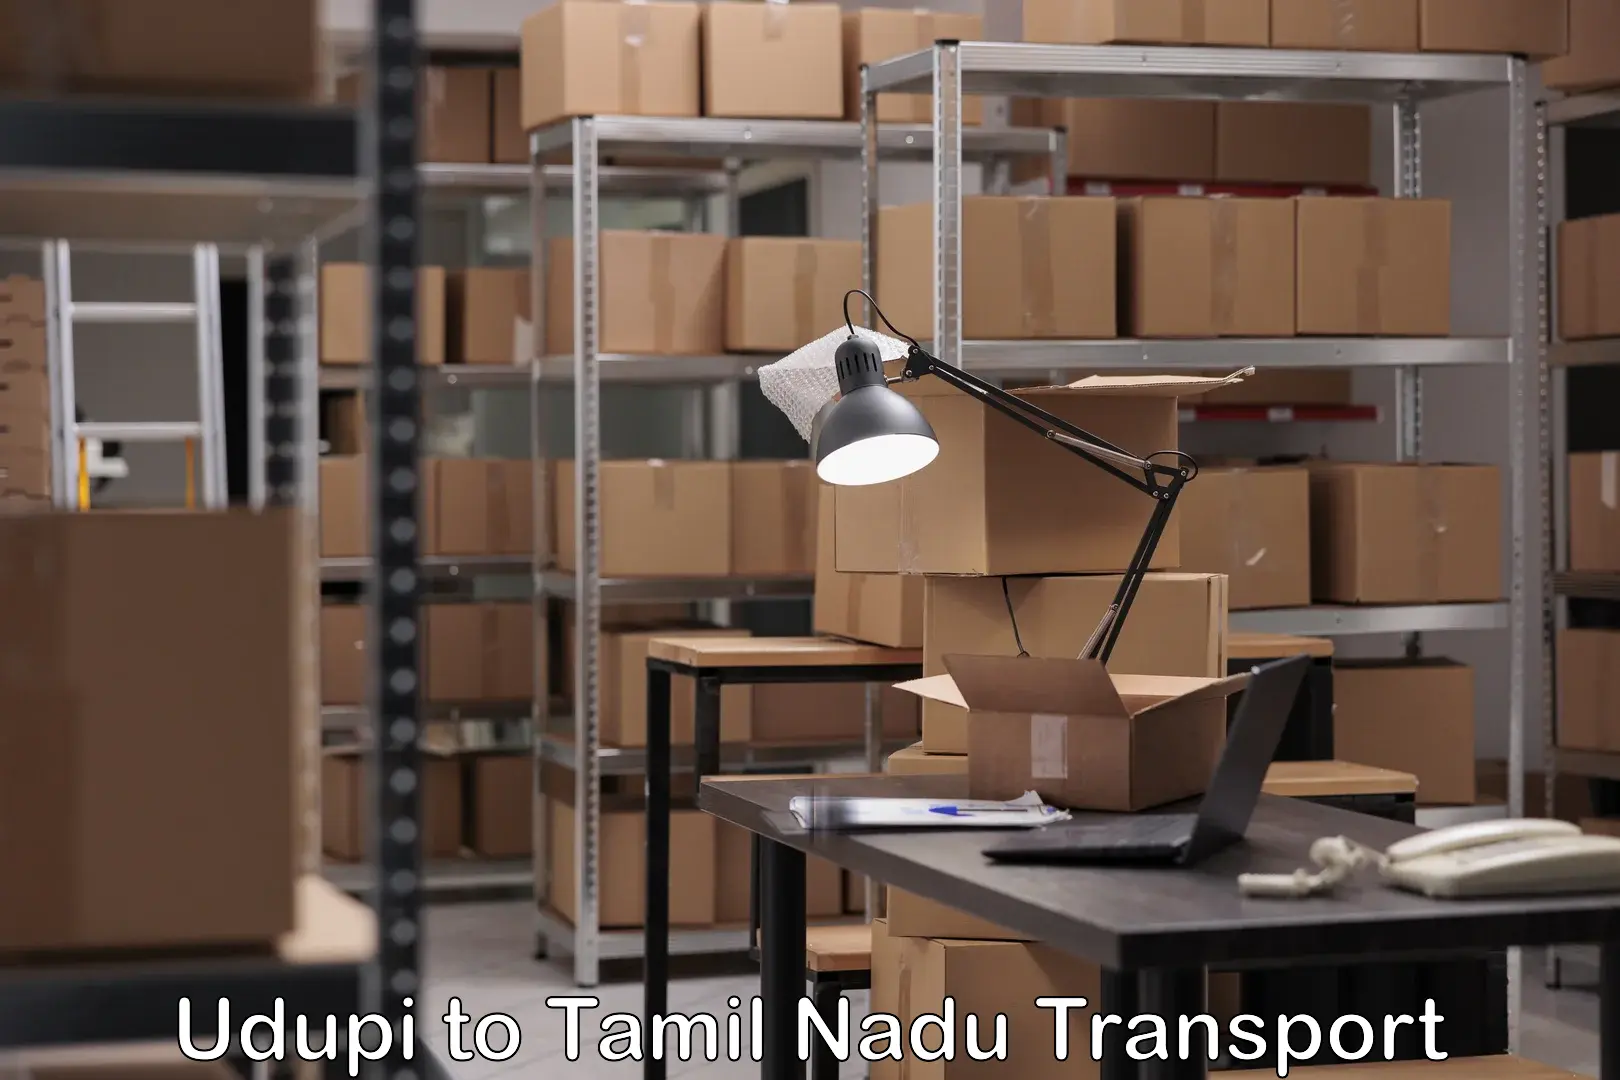 Nearby transport service Udupi to Tamil Nadu